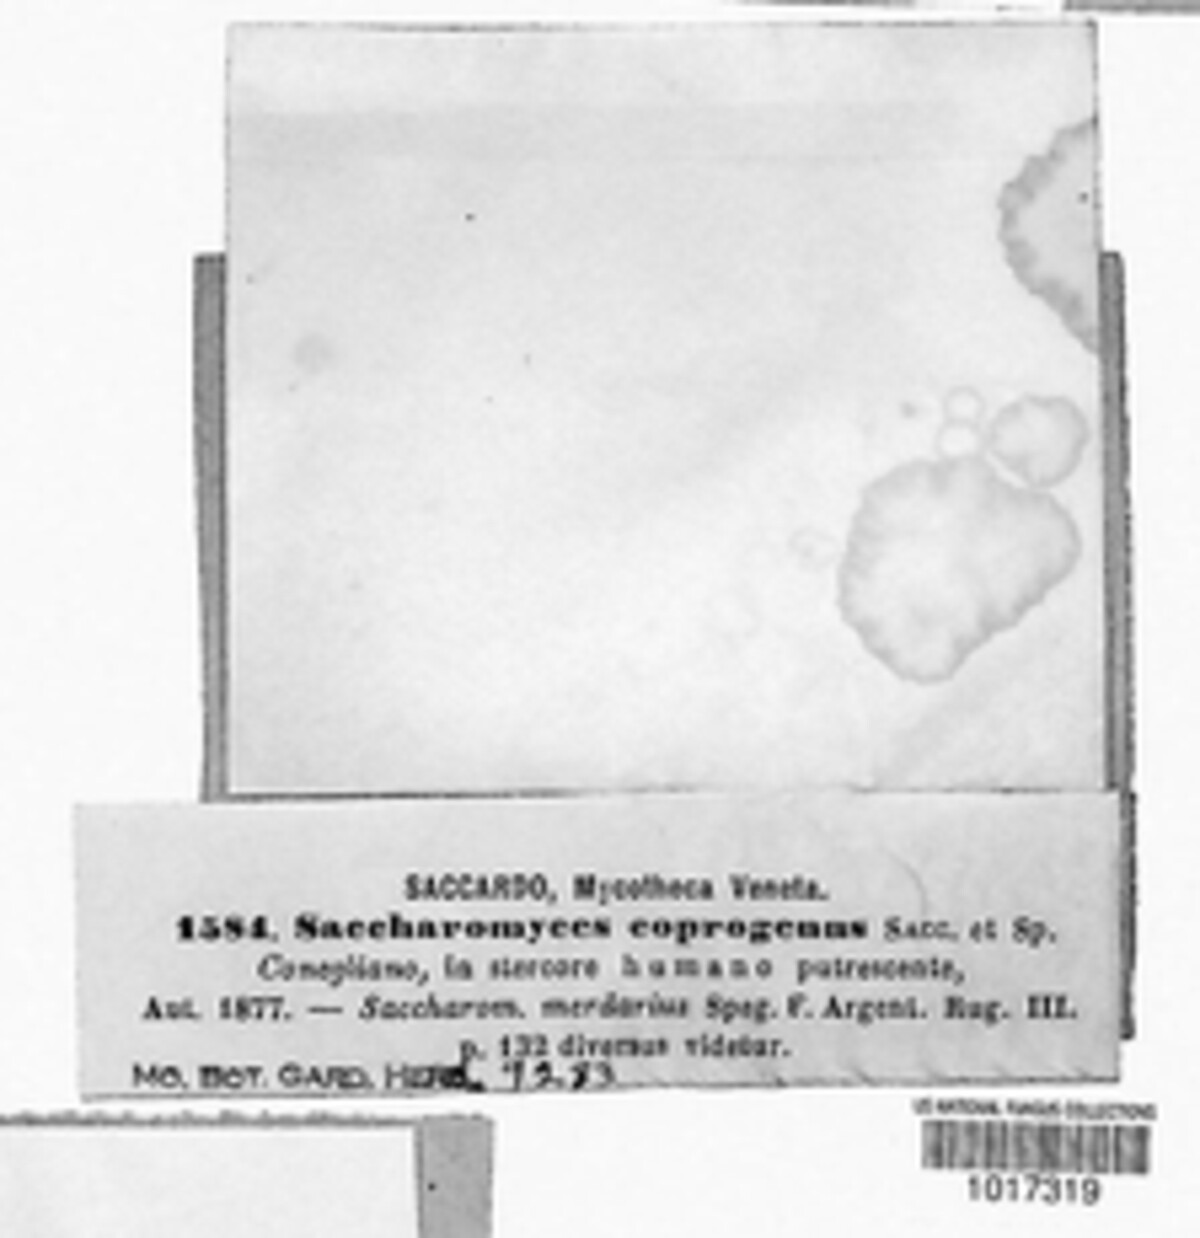 Saccharomyces coprogenus image